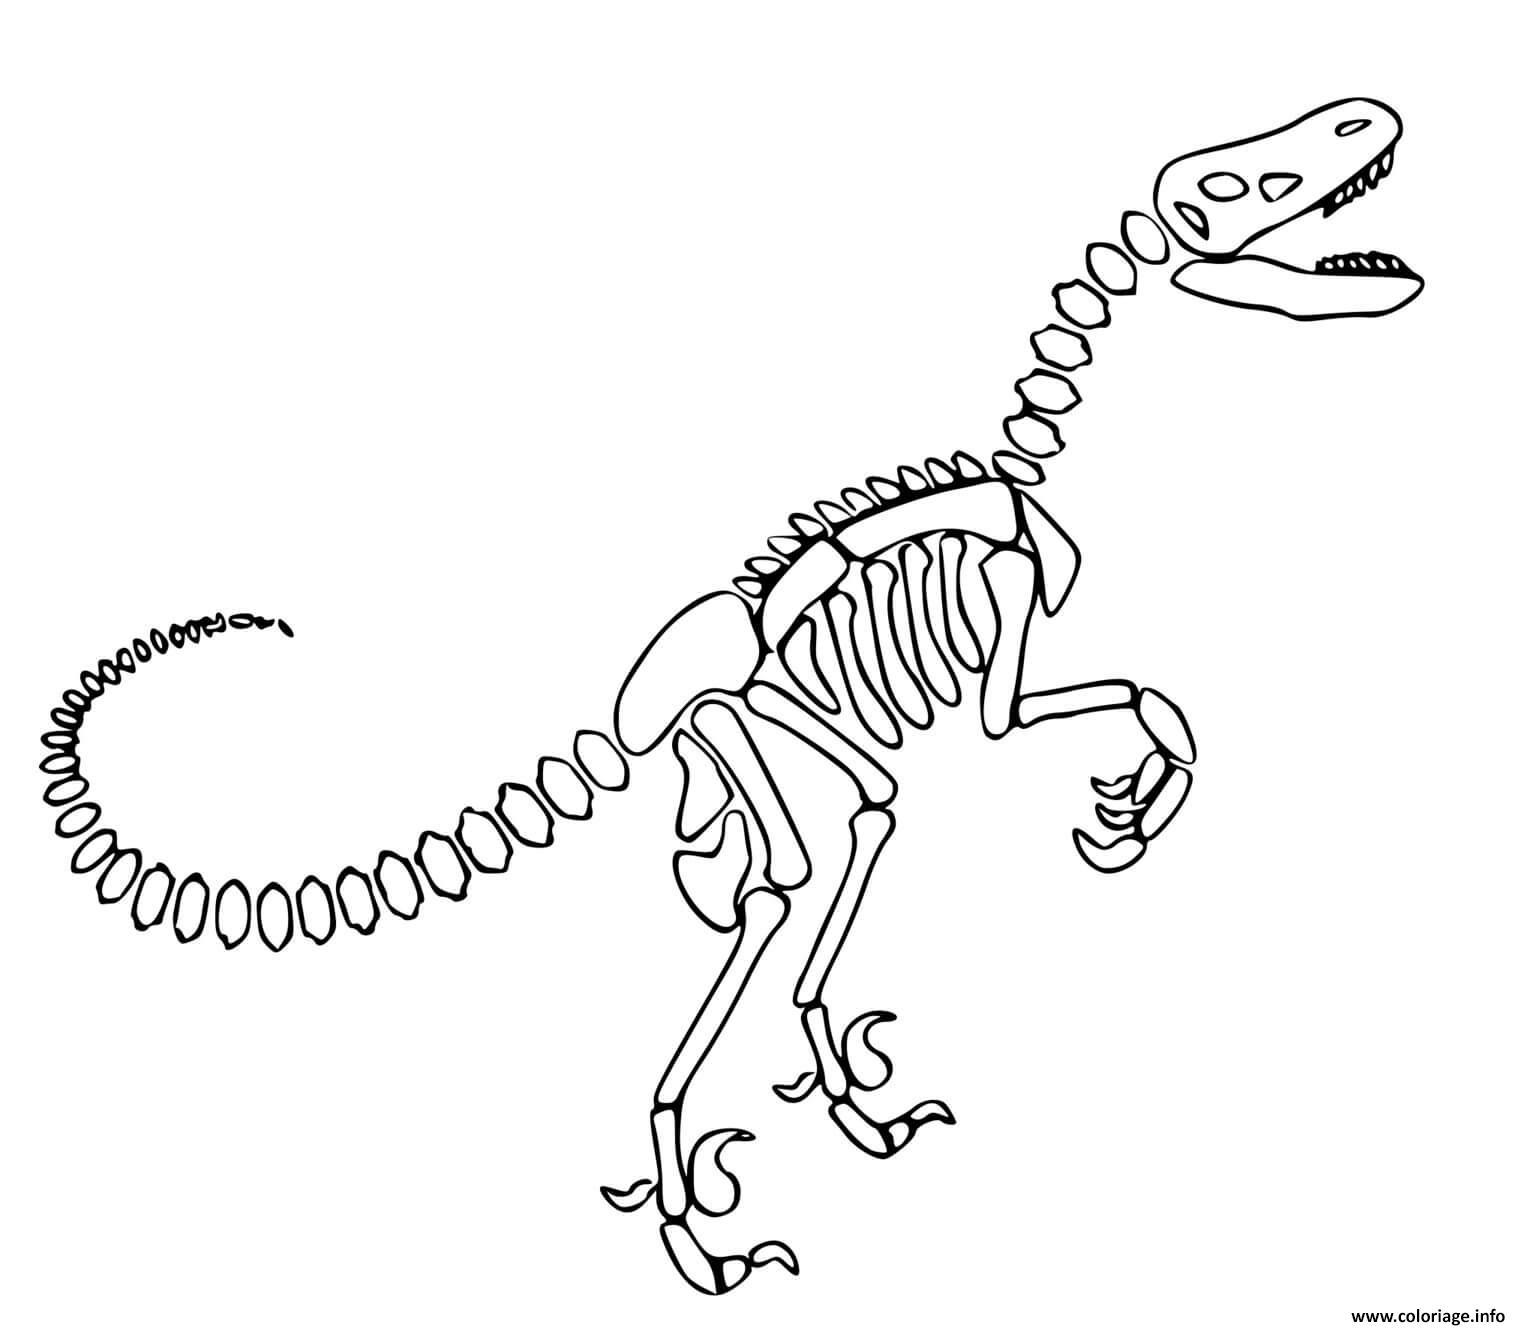 Dessin dinosaure squelette Coloriage Gratuit à Imprimer